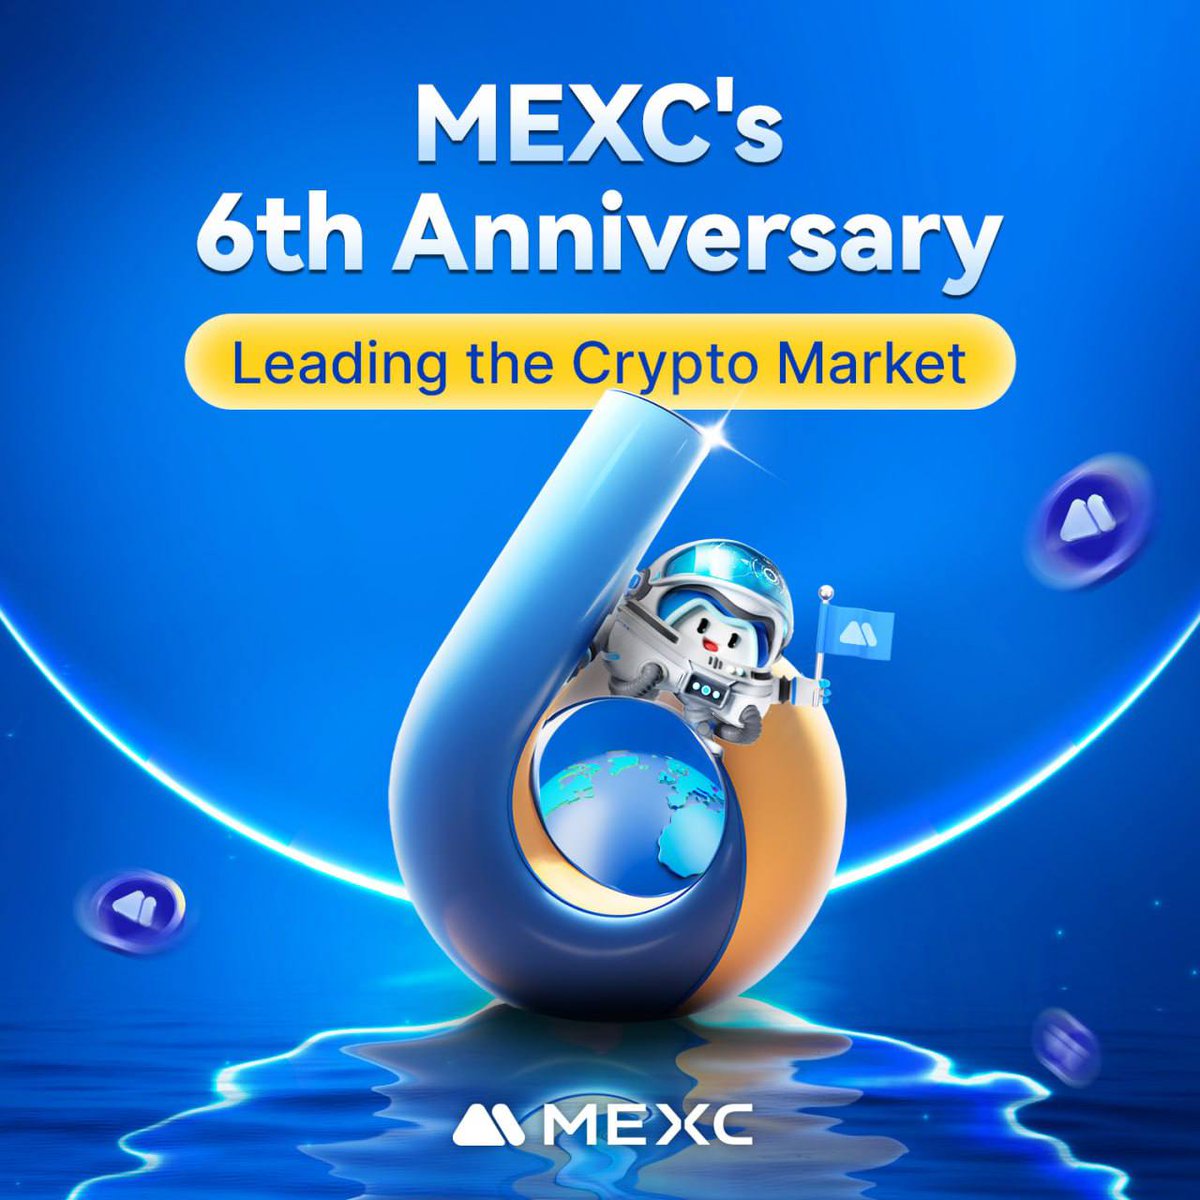 🎂 Alles Gute zum 6. Jahrestag, #MEXC !

In den letzten 6 Jahren haben wir den Kryptomarkt mit der schnellsten Listing-Geschwindigkeit angeführt und Millionen von Nutzern mit „niedrigen Gebühren und hohen Gewinnenchancen“ angezogen 👏

Vielen Dank an alle für eure Unterstützung